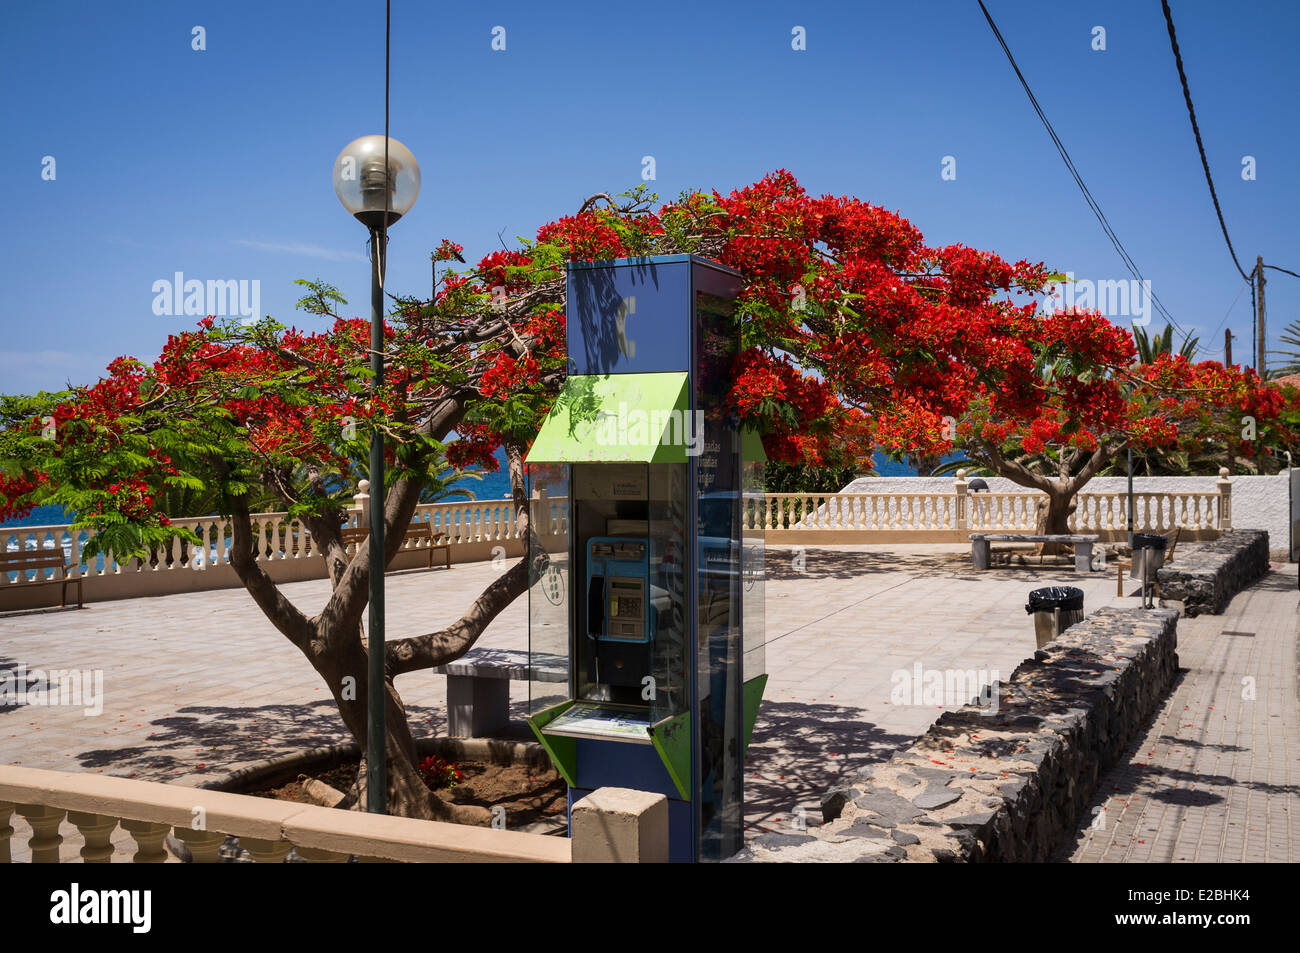 Floraison rouge arbre flamboyant et telefonica téléphone public fort dans un plaza à Tenerife, Îles Canaries, Espagne. Banque D'Images